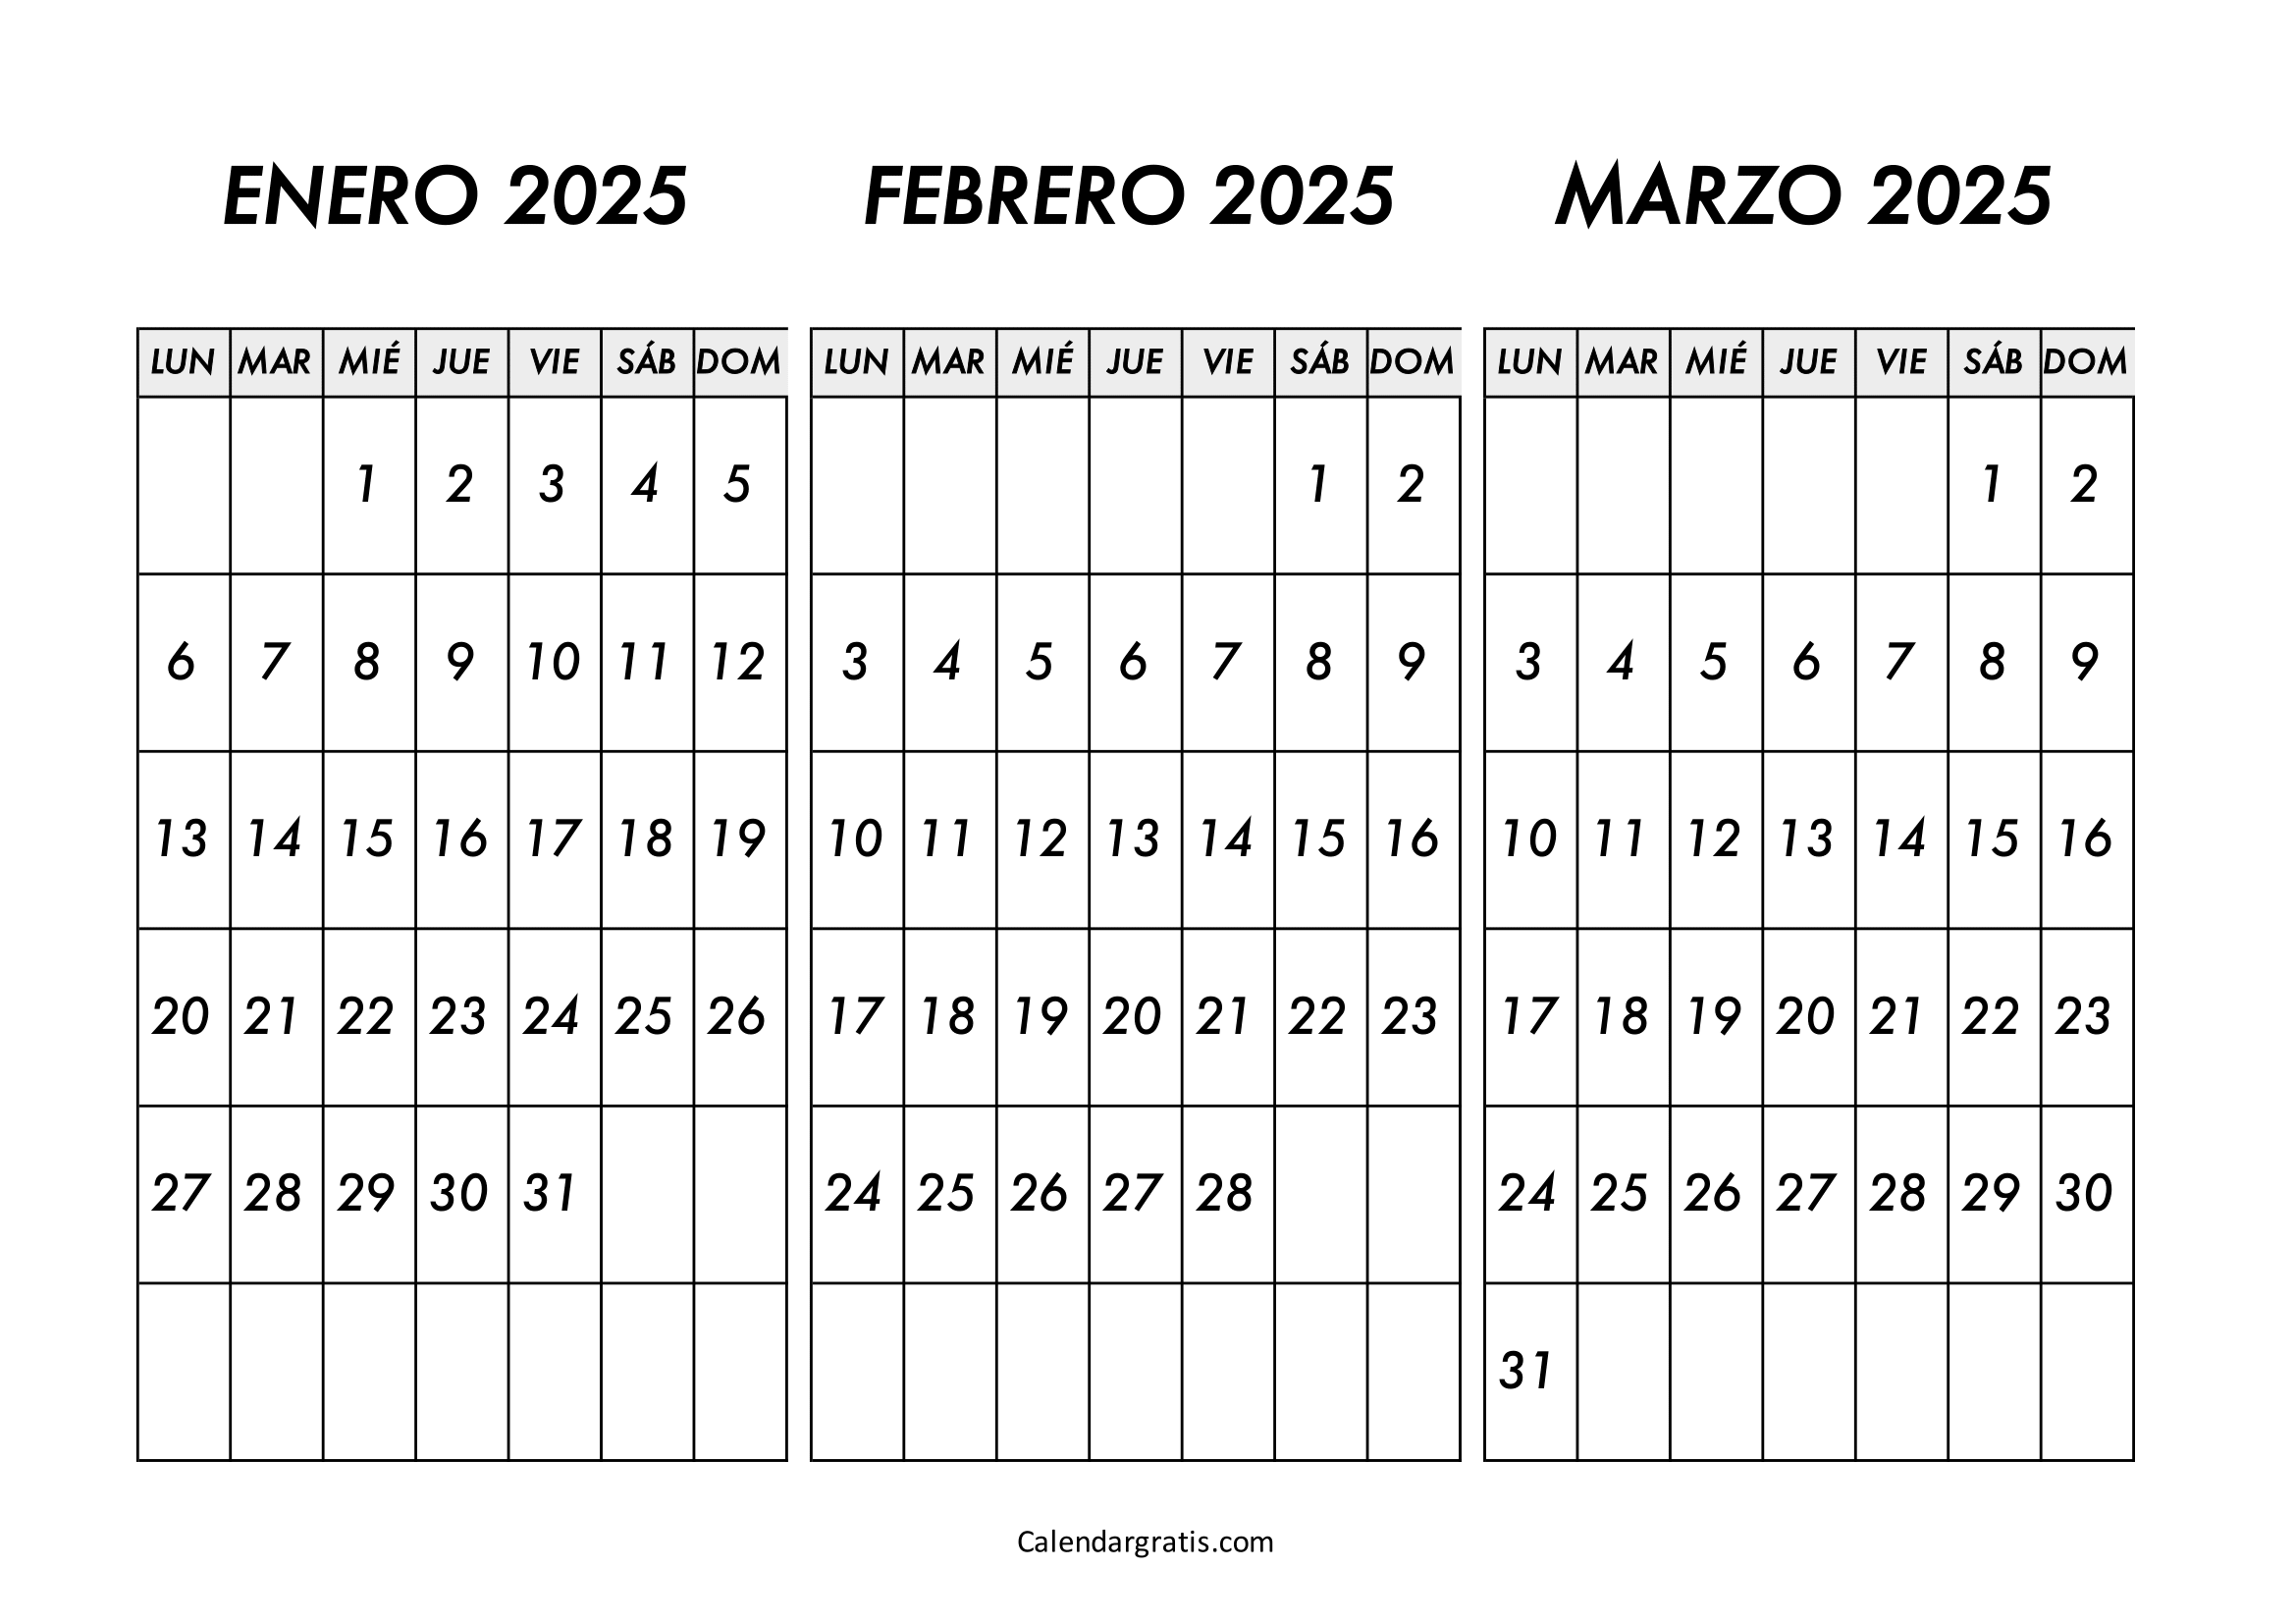 Calendario enero febrero y marzo 2025 para imprimir